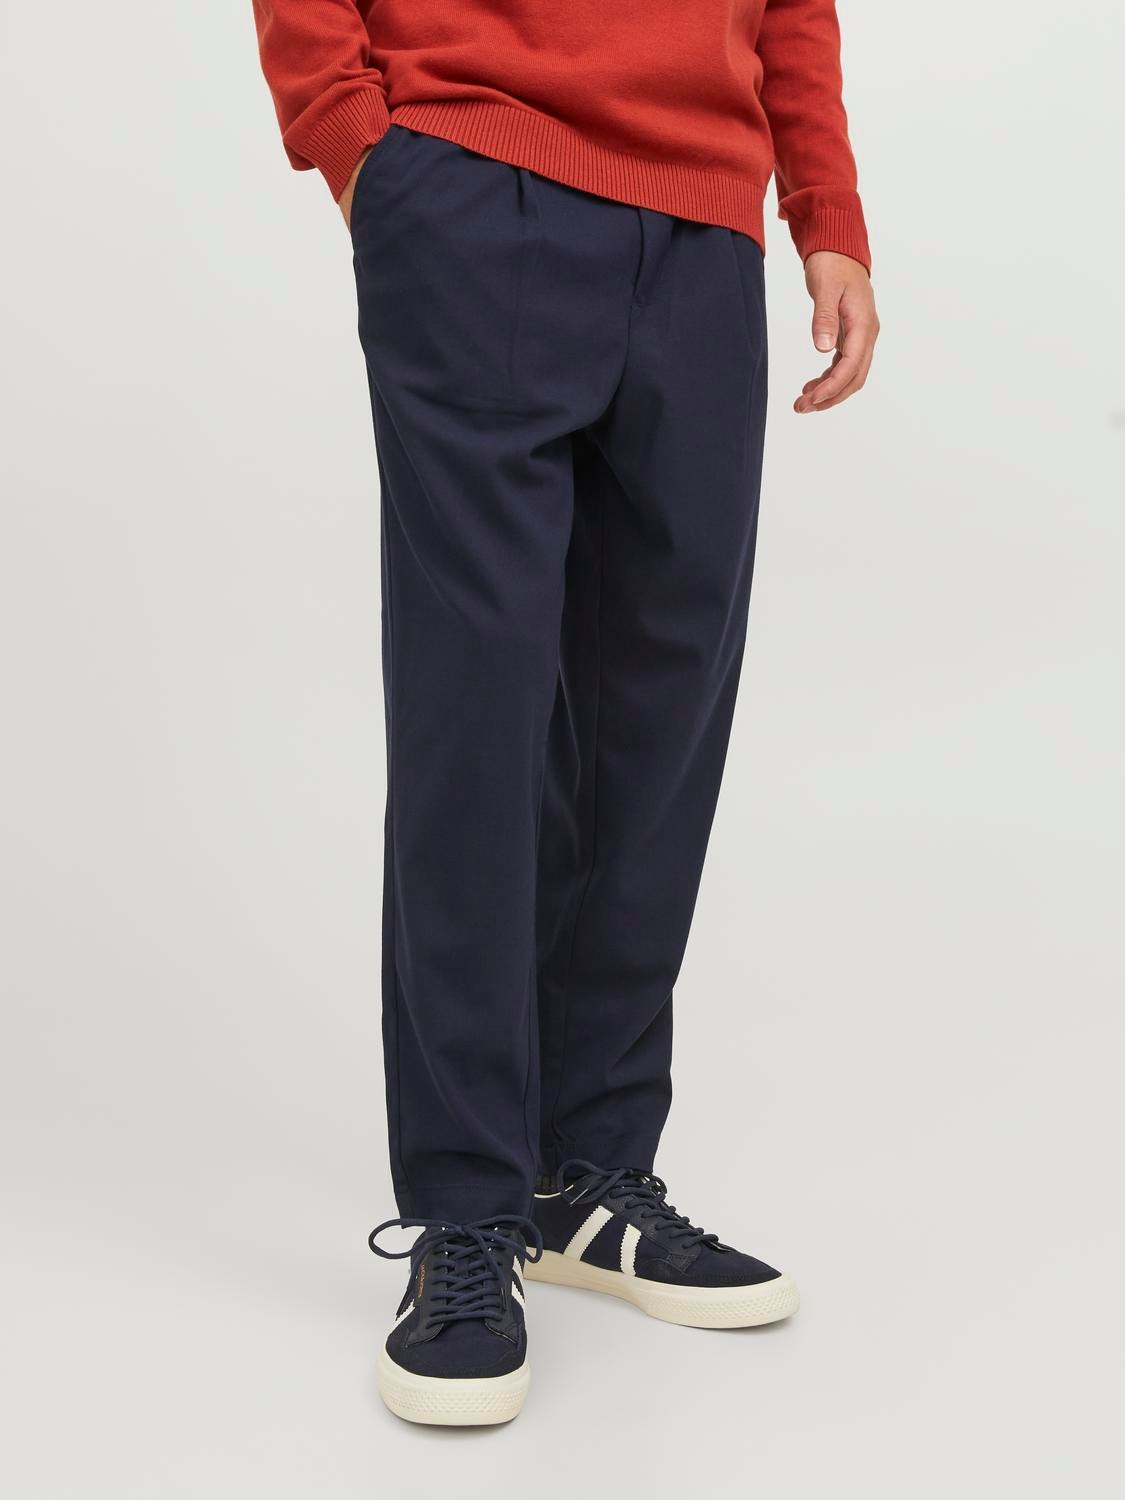 Jack & Jones Loose Fit Plátěné kalhoty Chino -Navy Blazer - 12242212